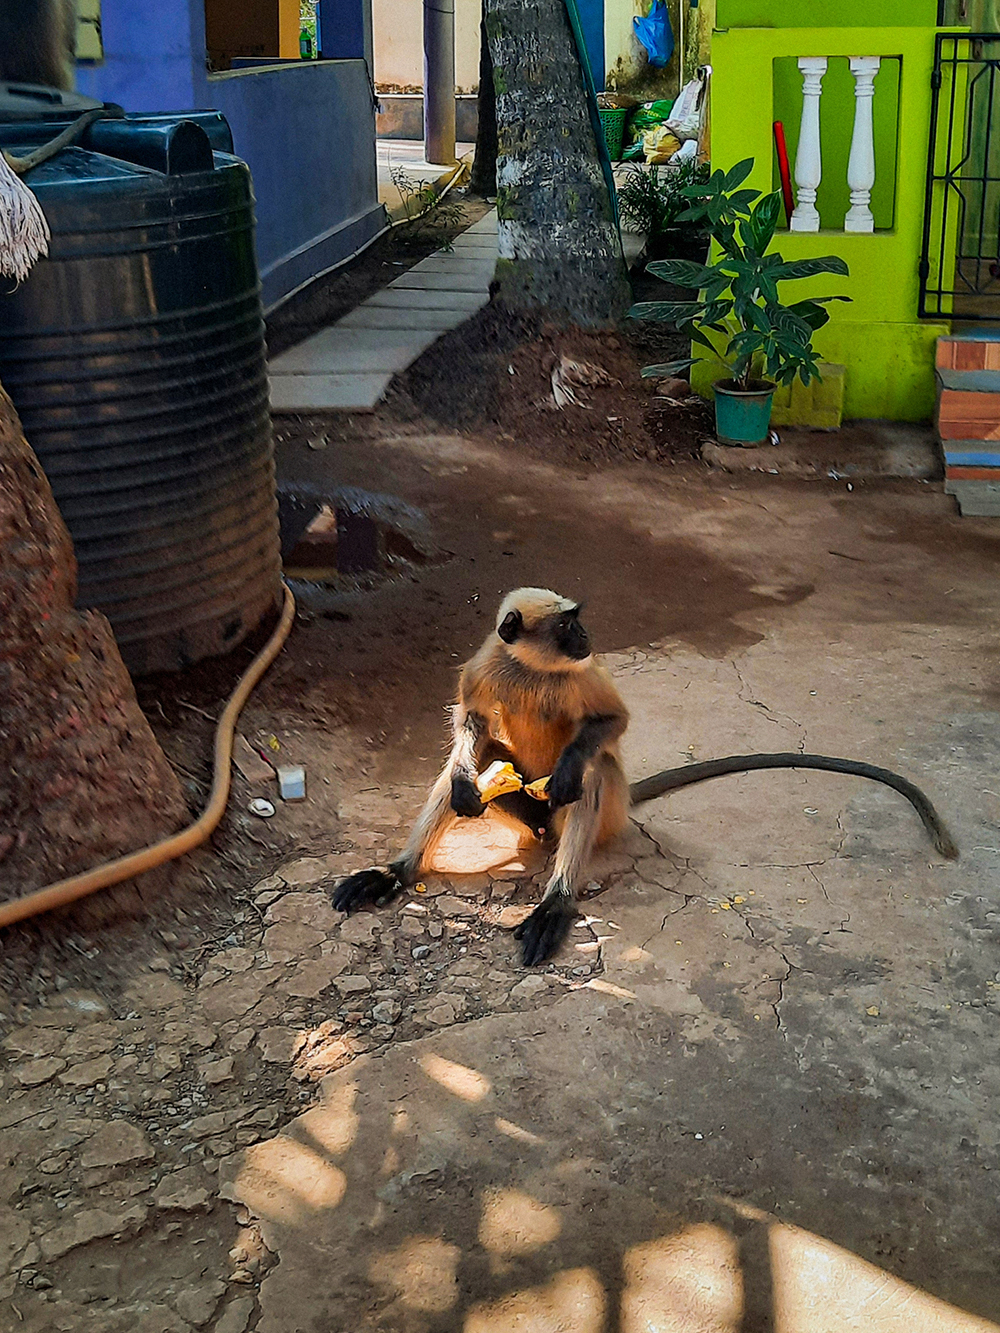 Однажды обезьяны пришли попрошайничать, скормил им килограмм бананов